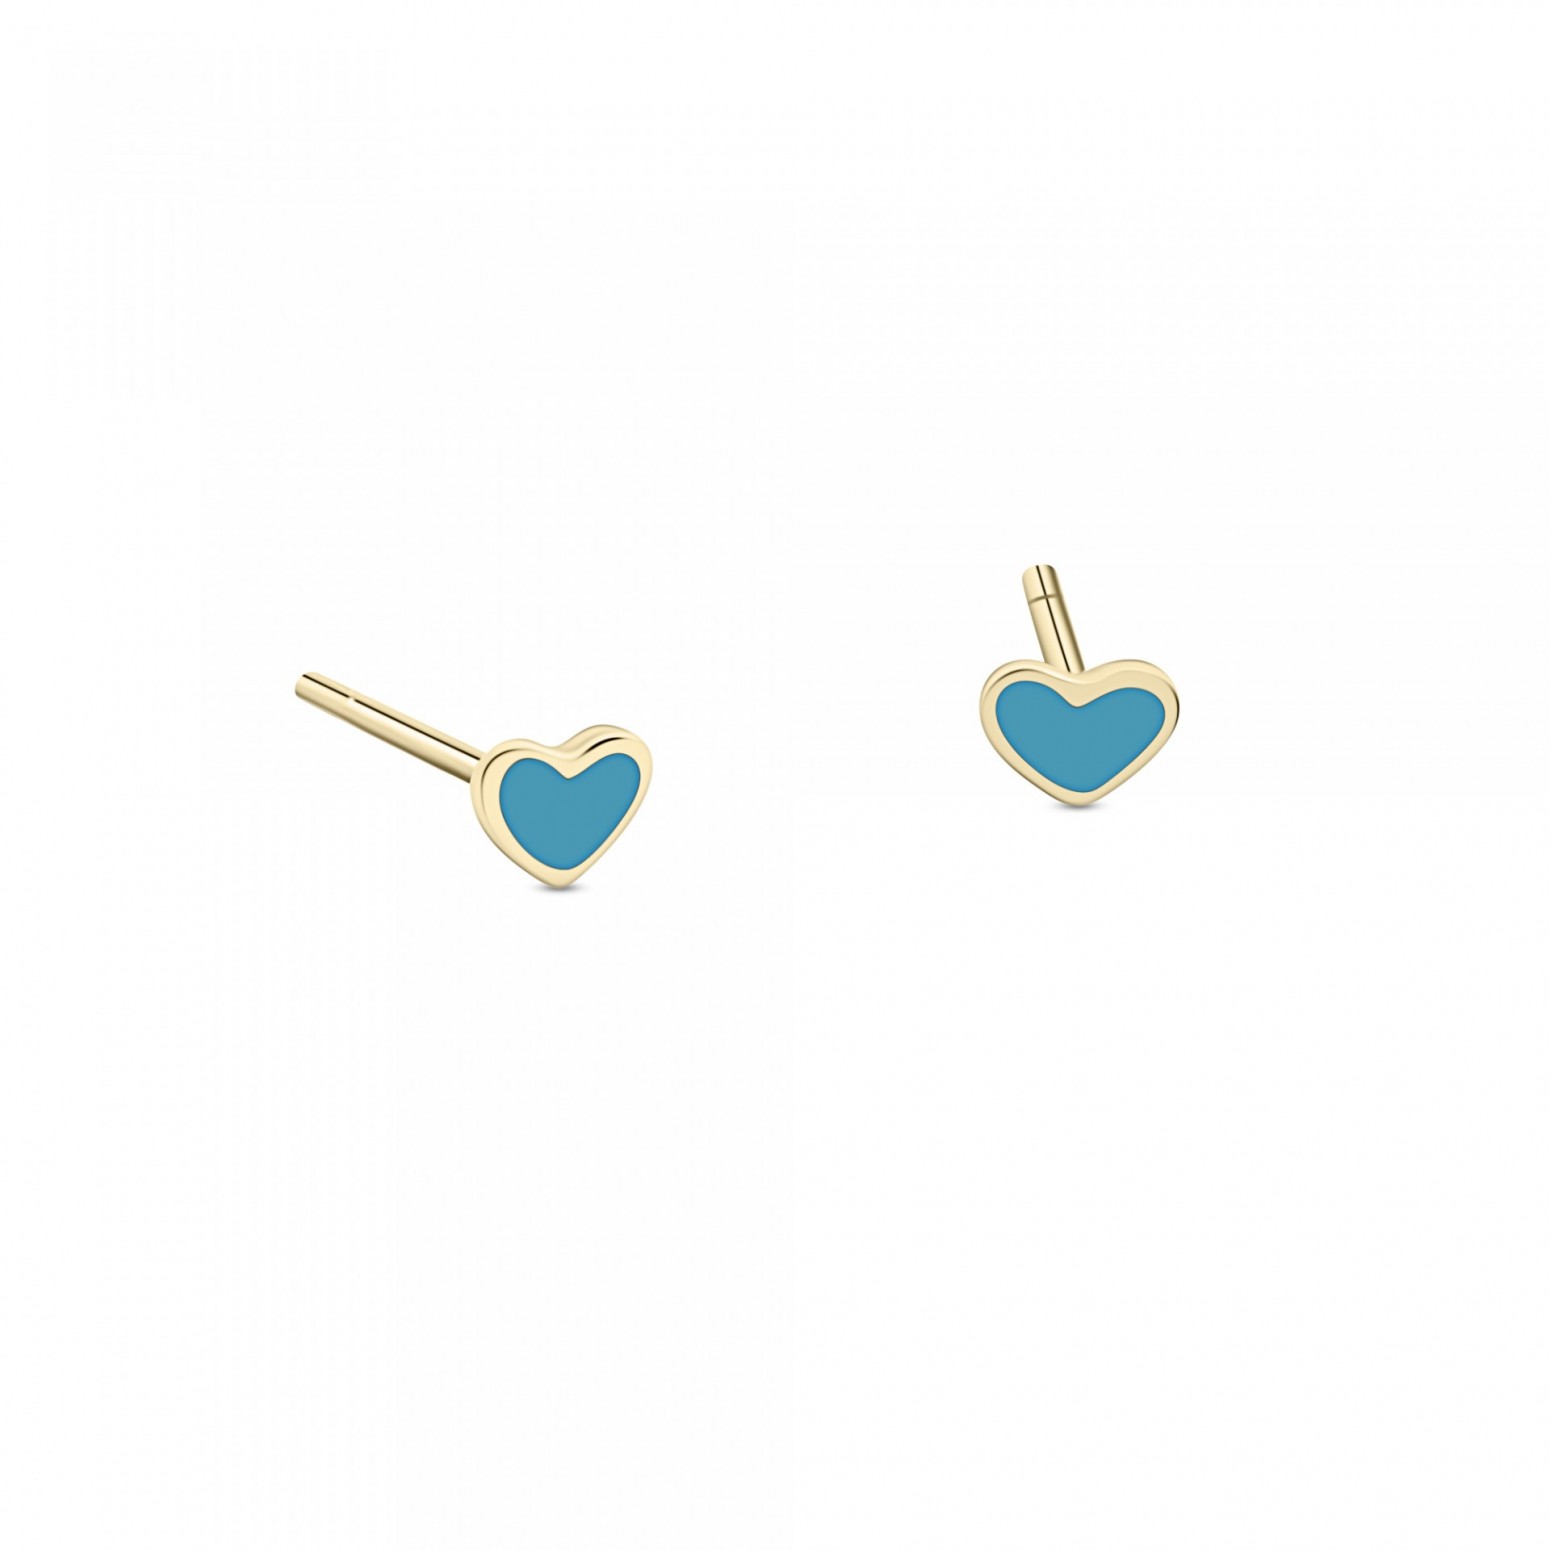 Heart baby earrings K9 gold with enamel, ps0150 EARRINGS Κοσμηματα - chrilia.gr